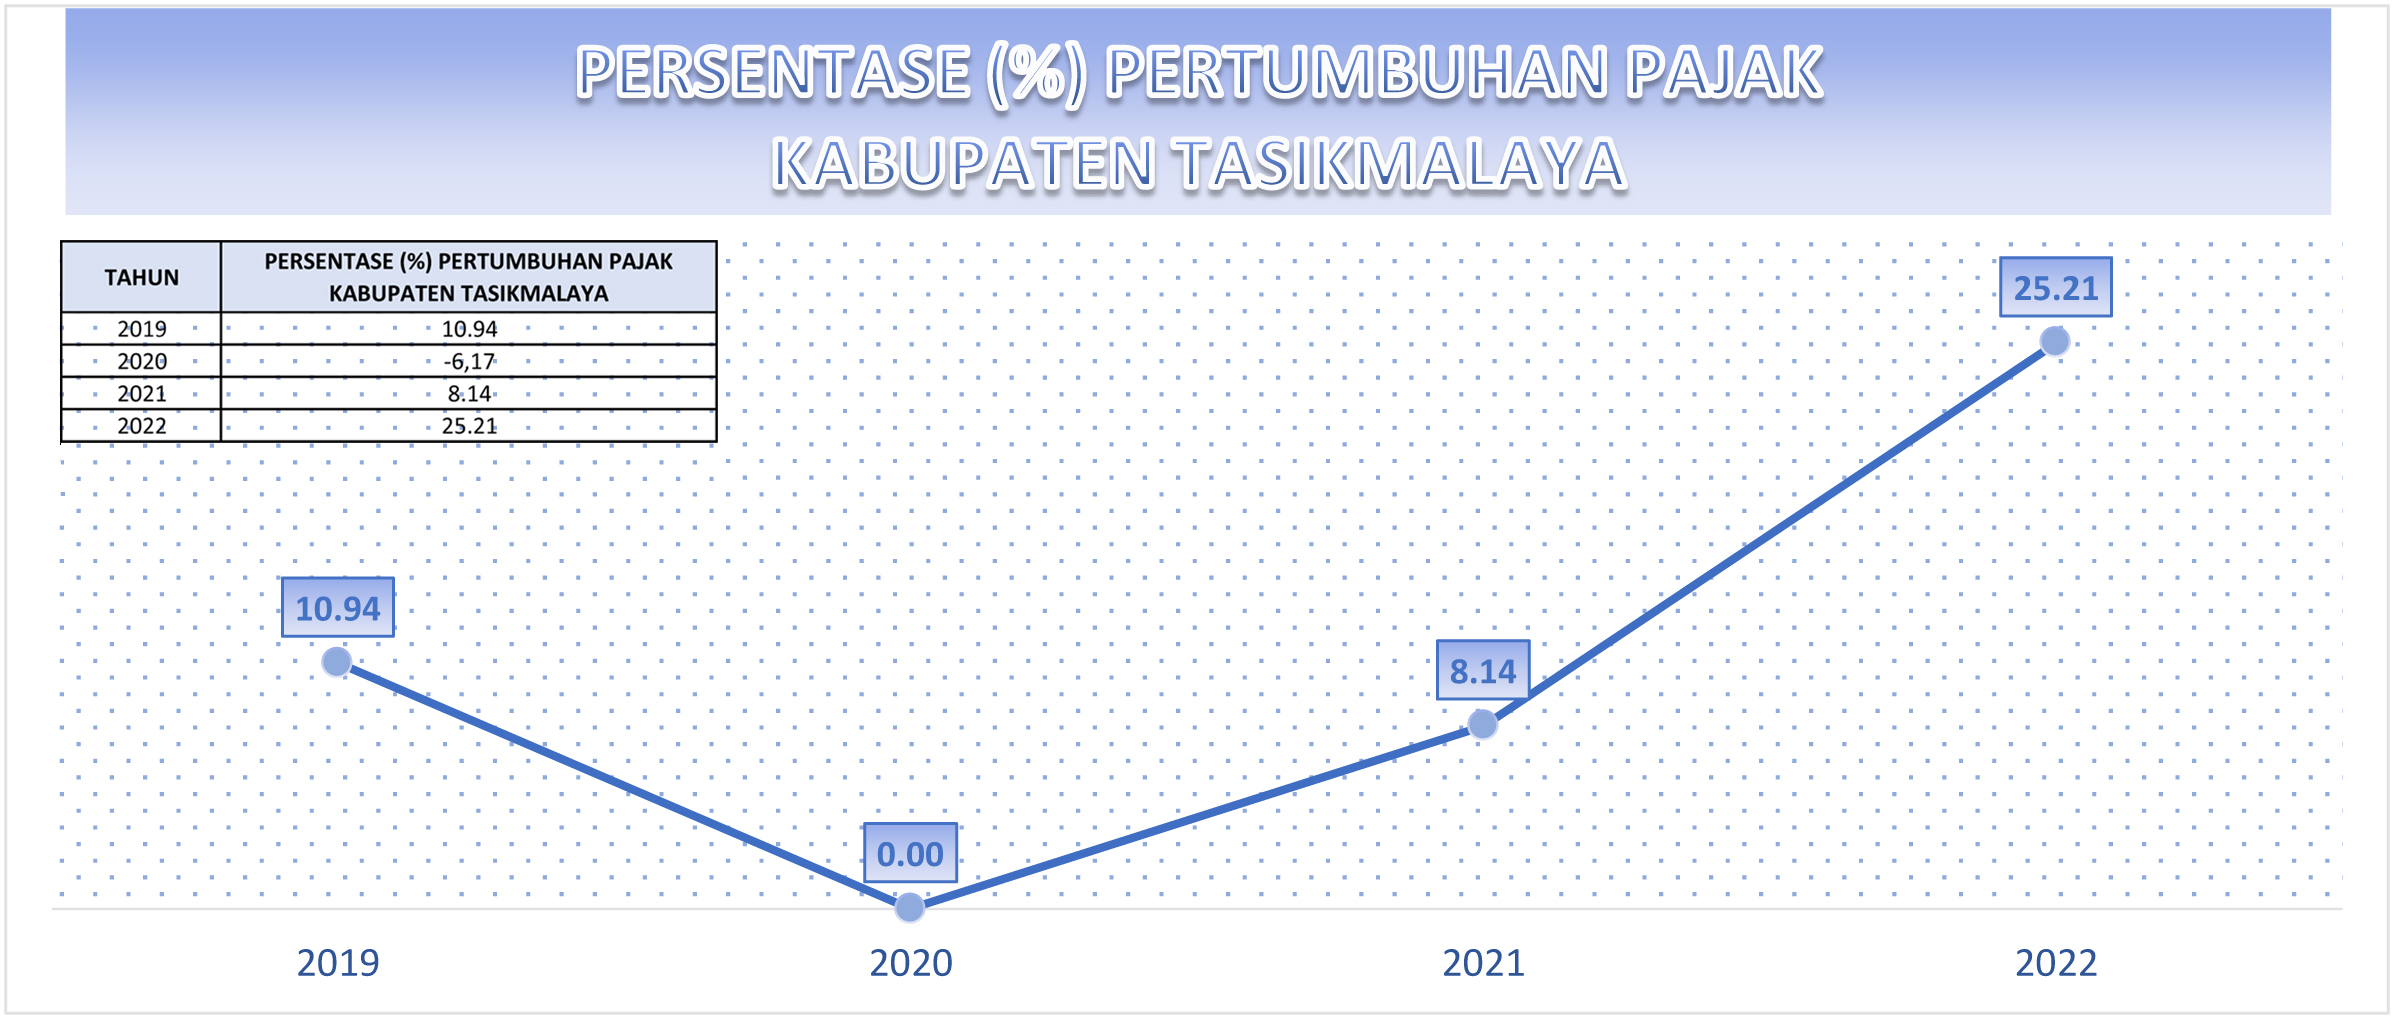 Pertumbuhan Pajak Pemerintah Daerah Kabupaten Tasikmalaya